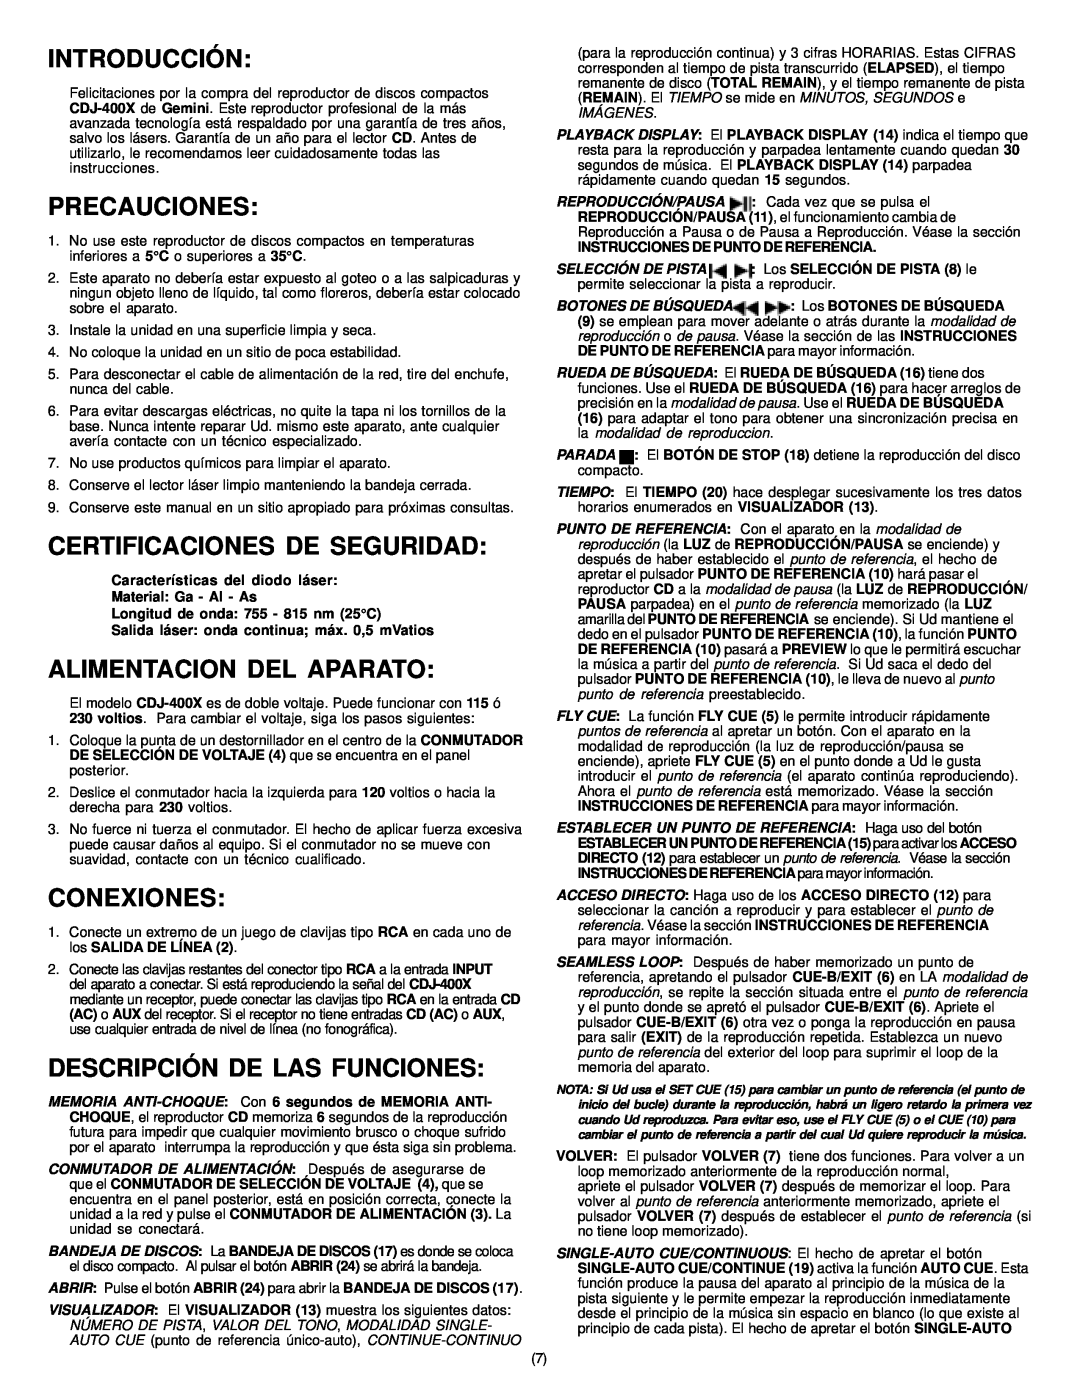 Gemini CD-400X Introducción, Precauciones, Certificaciones De Seguridad, Alimentacion Del Aparato, Conexiones, Imágenes 